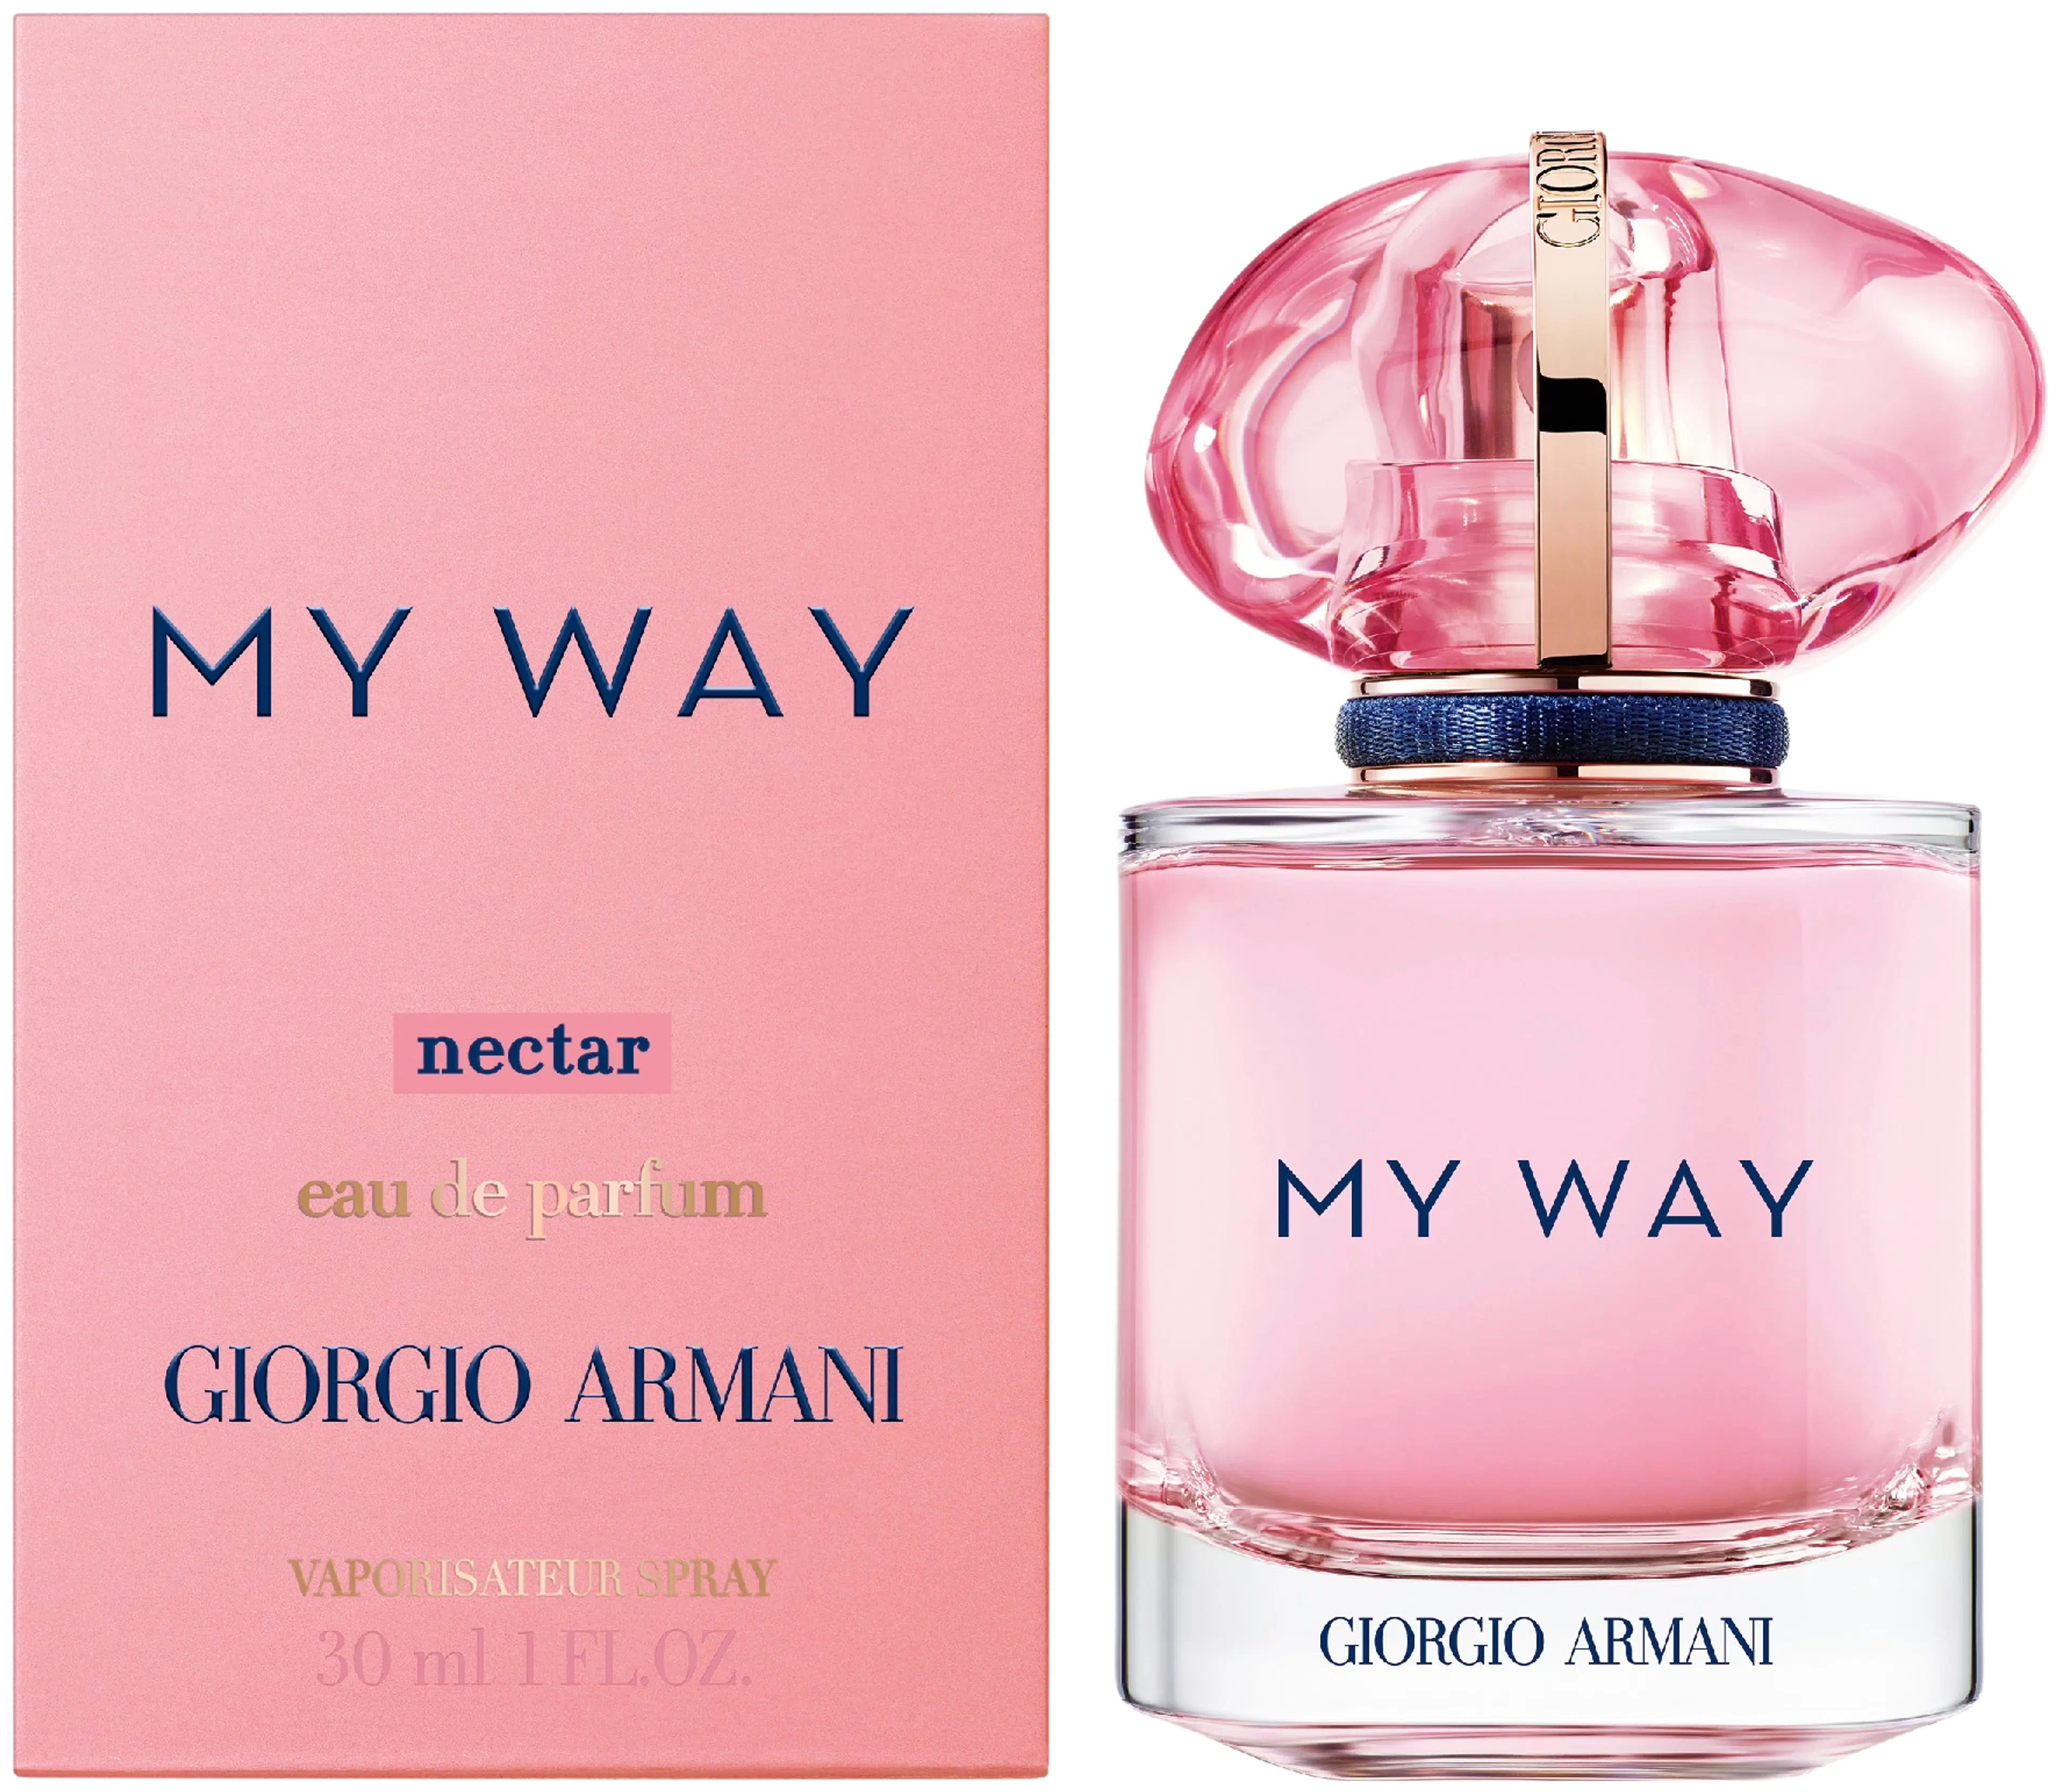 Giorgio Armani My Way Nectar EdP tuoksu 30 ml